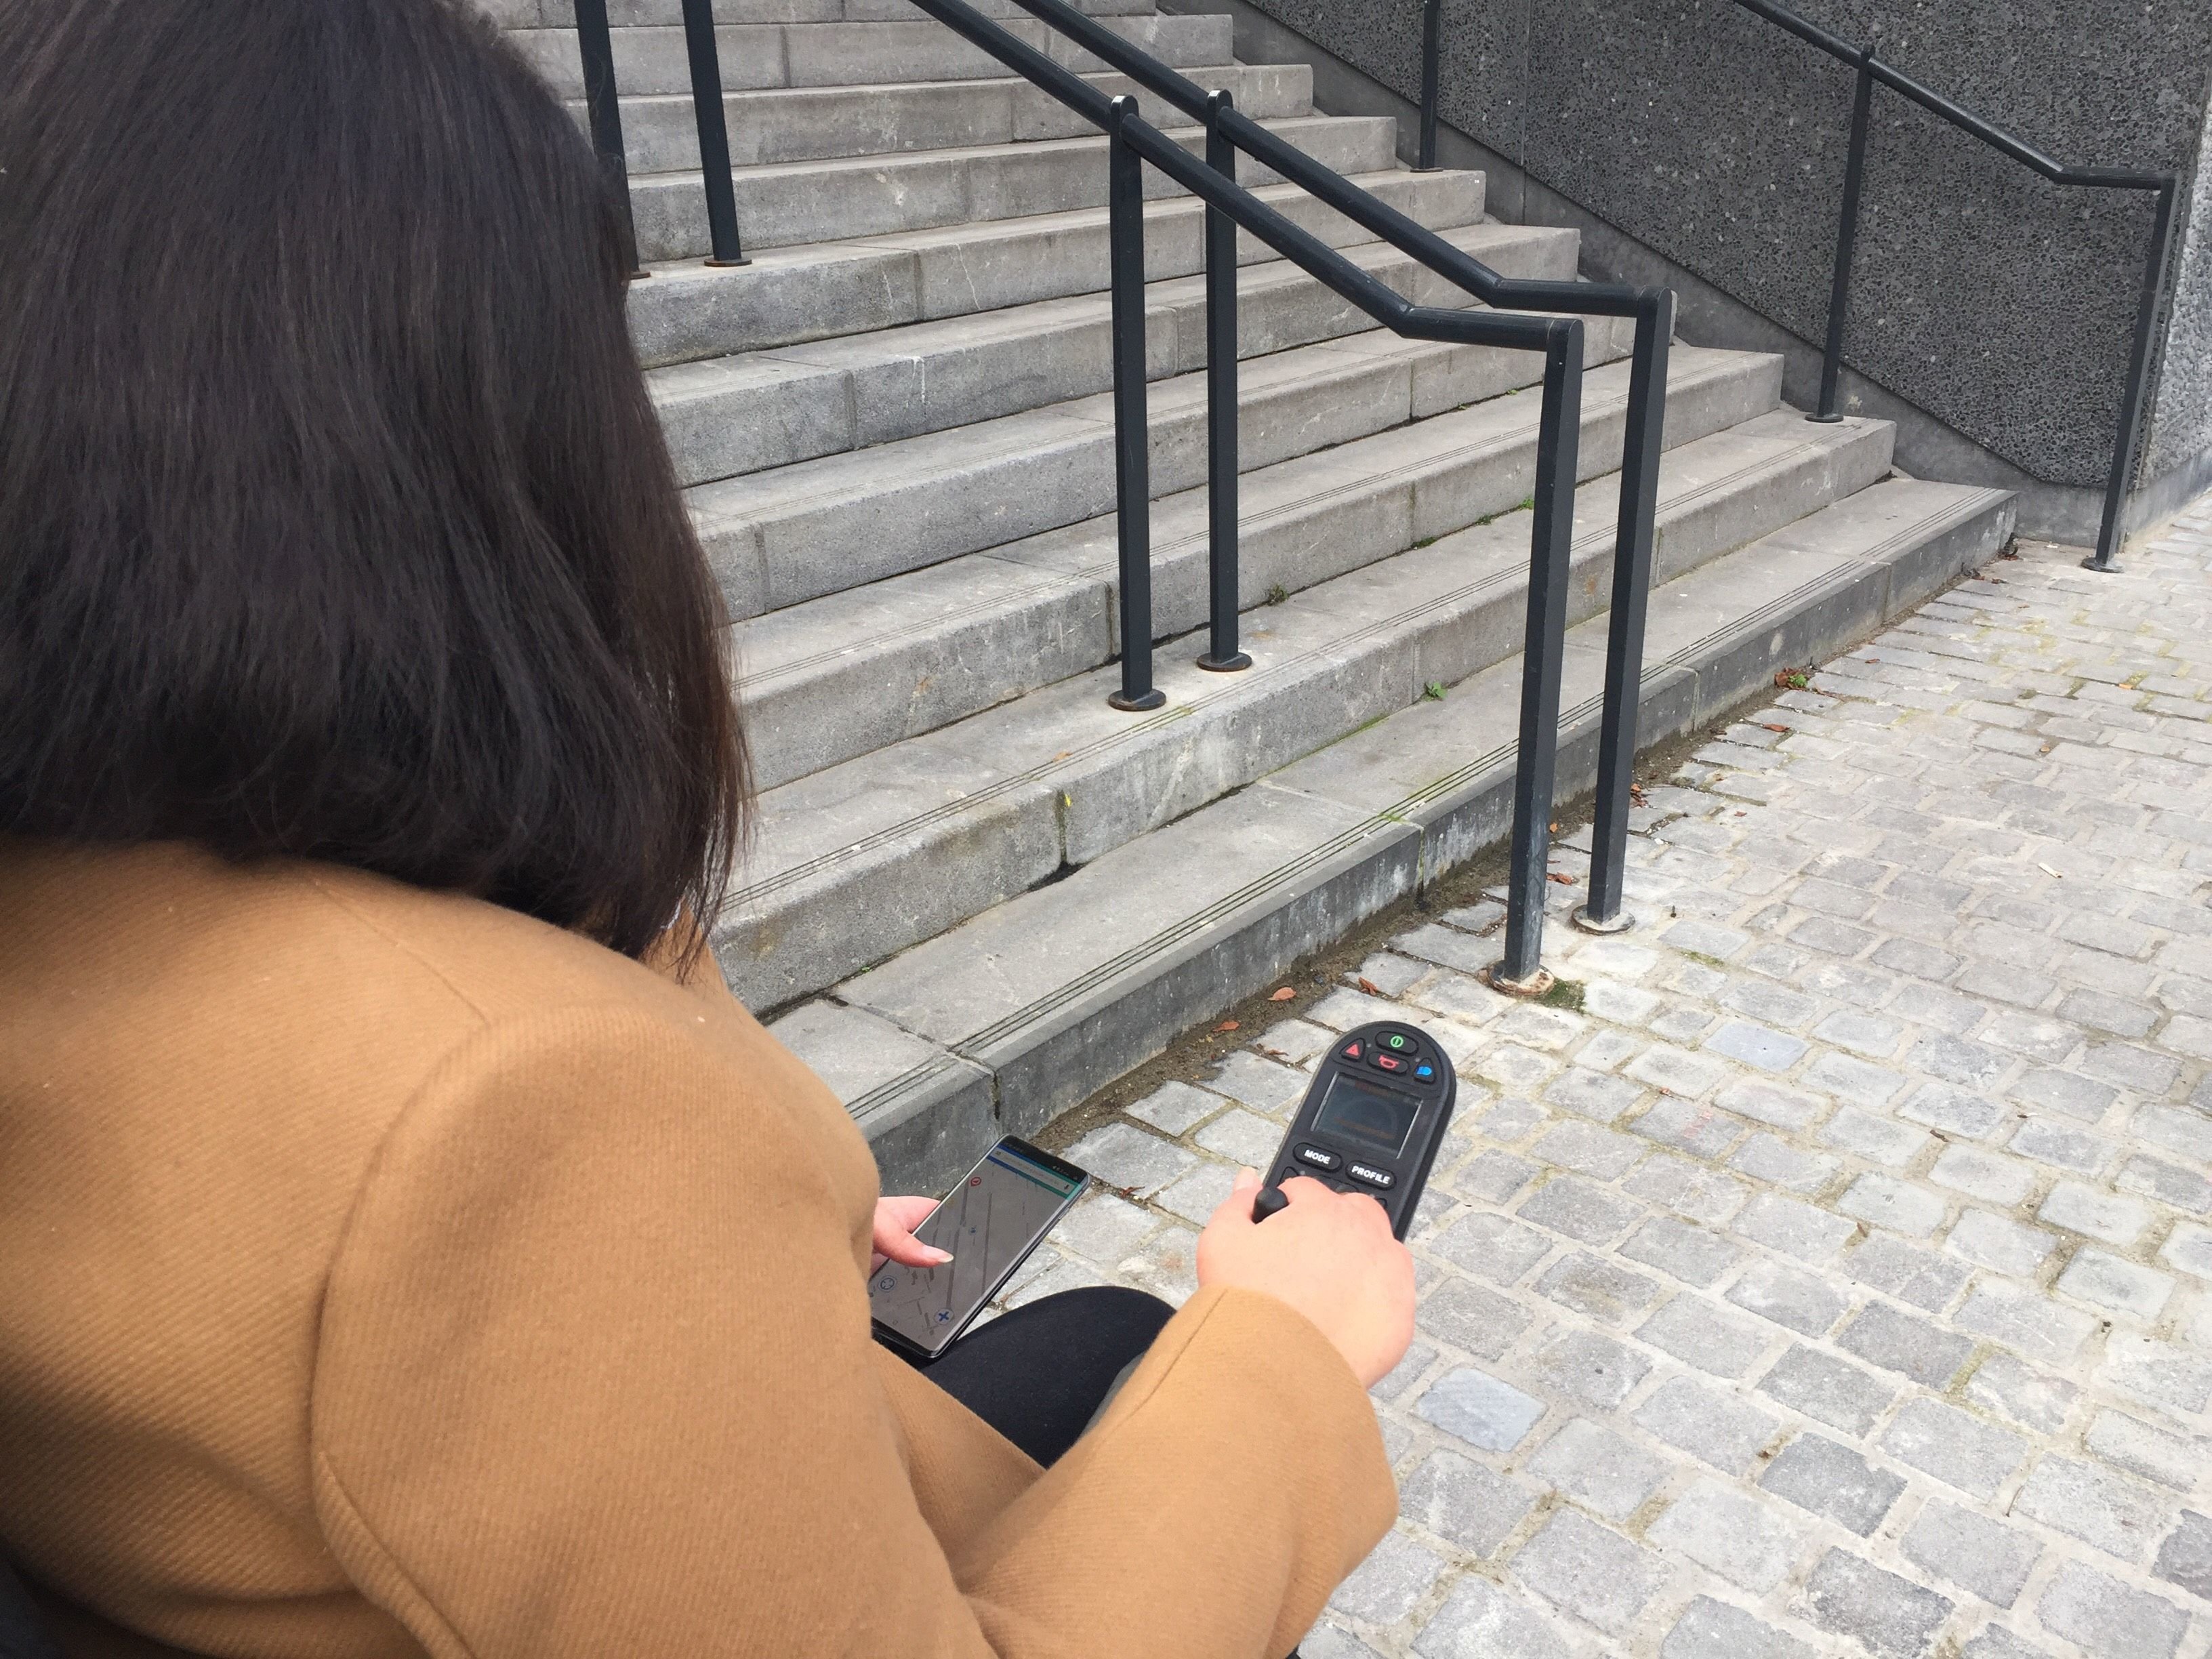 En un clic, un utilisateur de Streetco peut renseigner la présence d'un escalier fixe qui peut empêcher la circulation d'une personne en situation de handicap. LP/Octave Odola